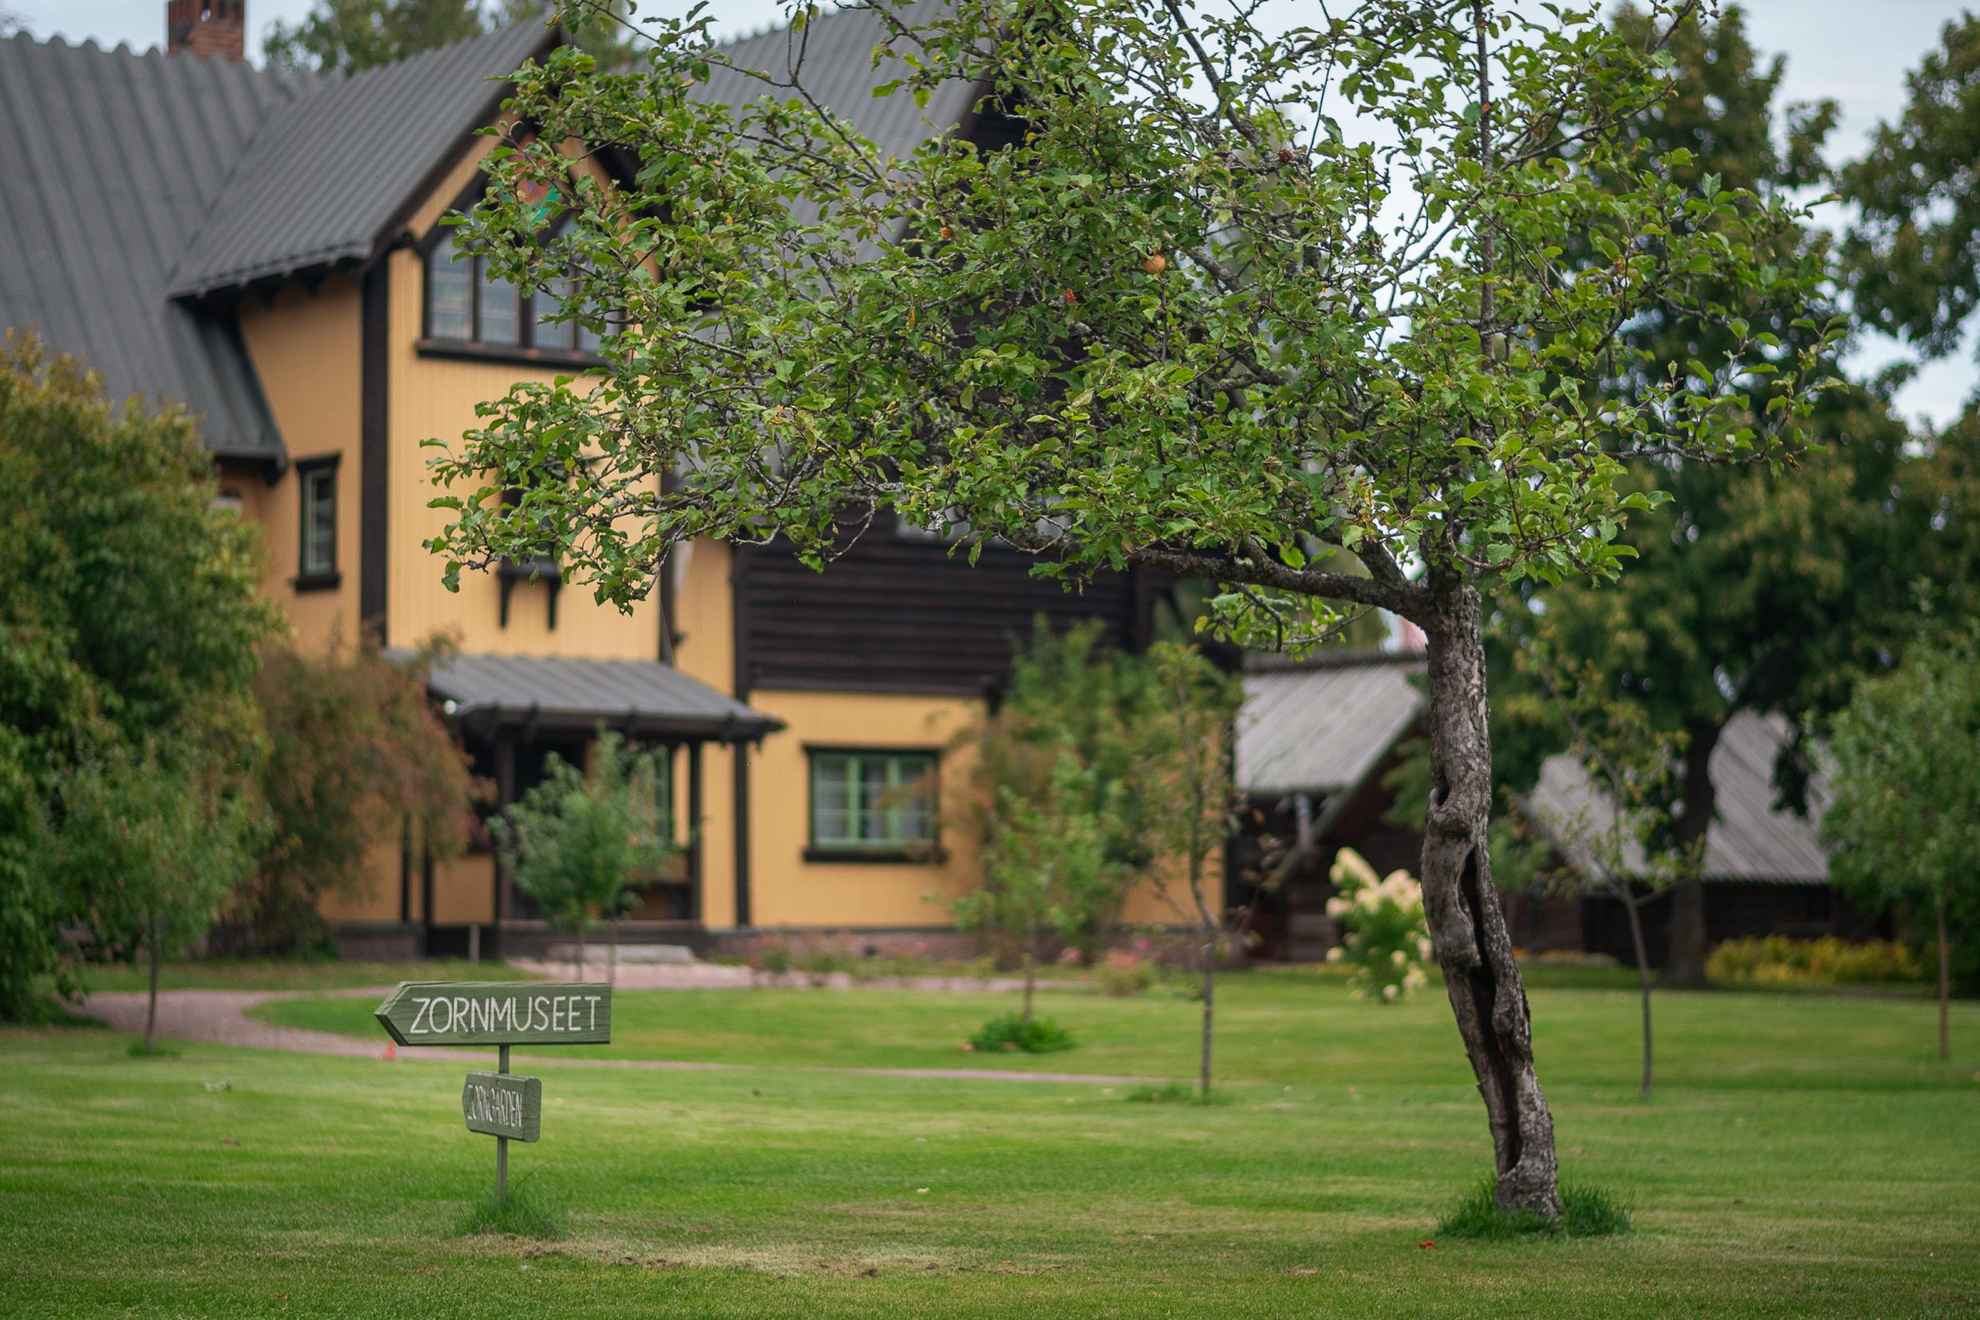 Im Vordergrund steht ein Baum und ein Holzschild auf dem Zornmuseet steht. Im Hintergrund ist das gelbe Haus der Zorn Familie zu sehen, welches heute ein Museum ist.